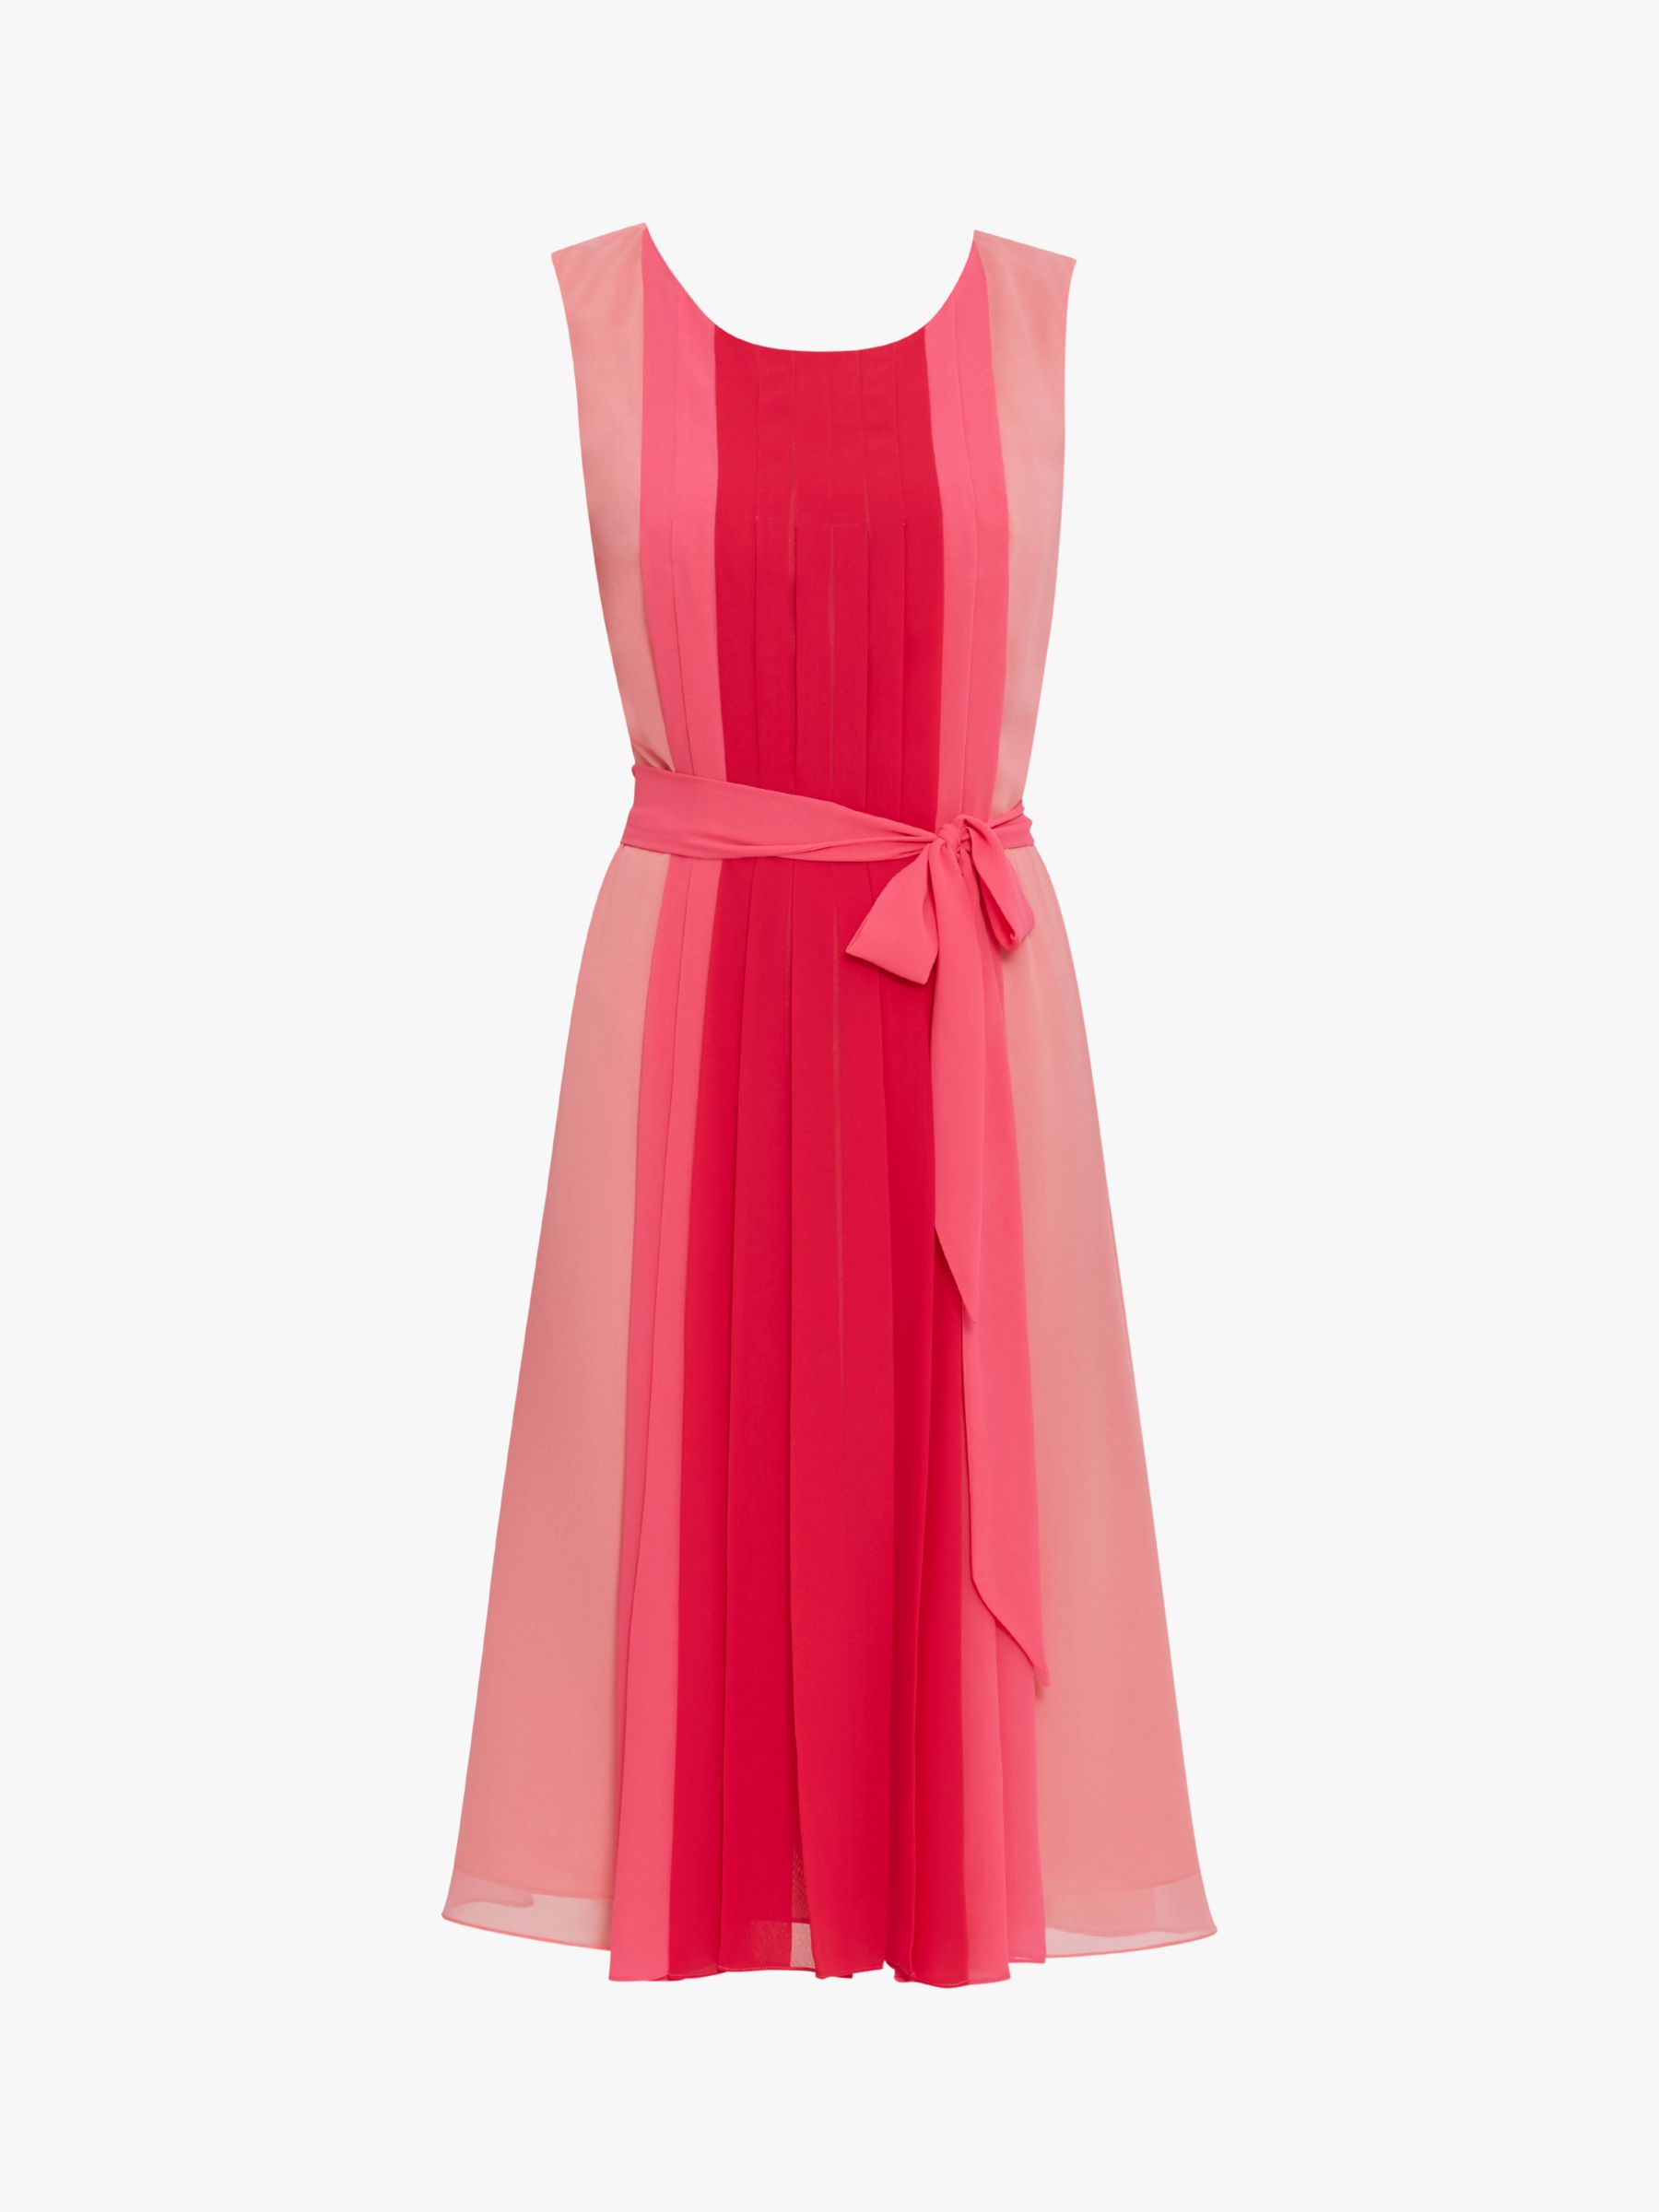 Gina Bacconi Janeen Chiffon Dress, Hot Pink/Multi, 20